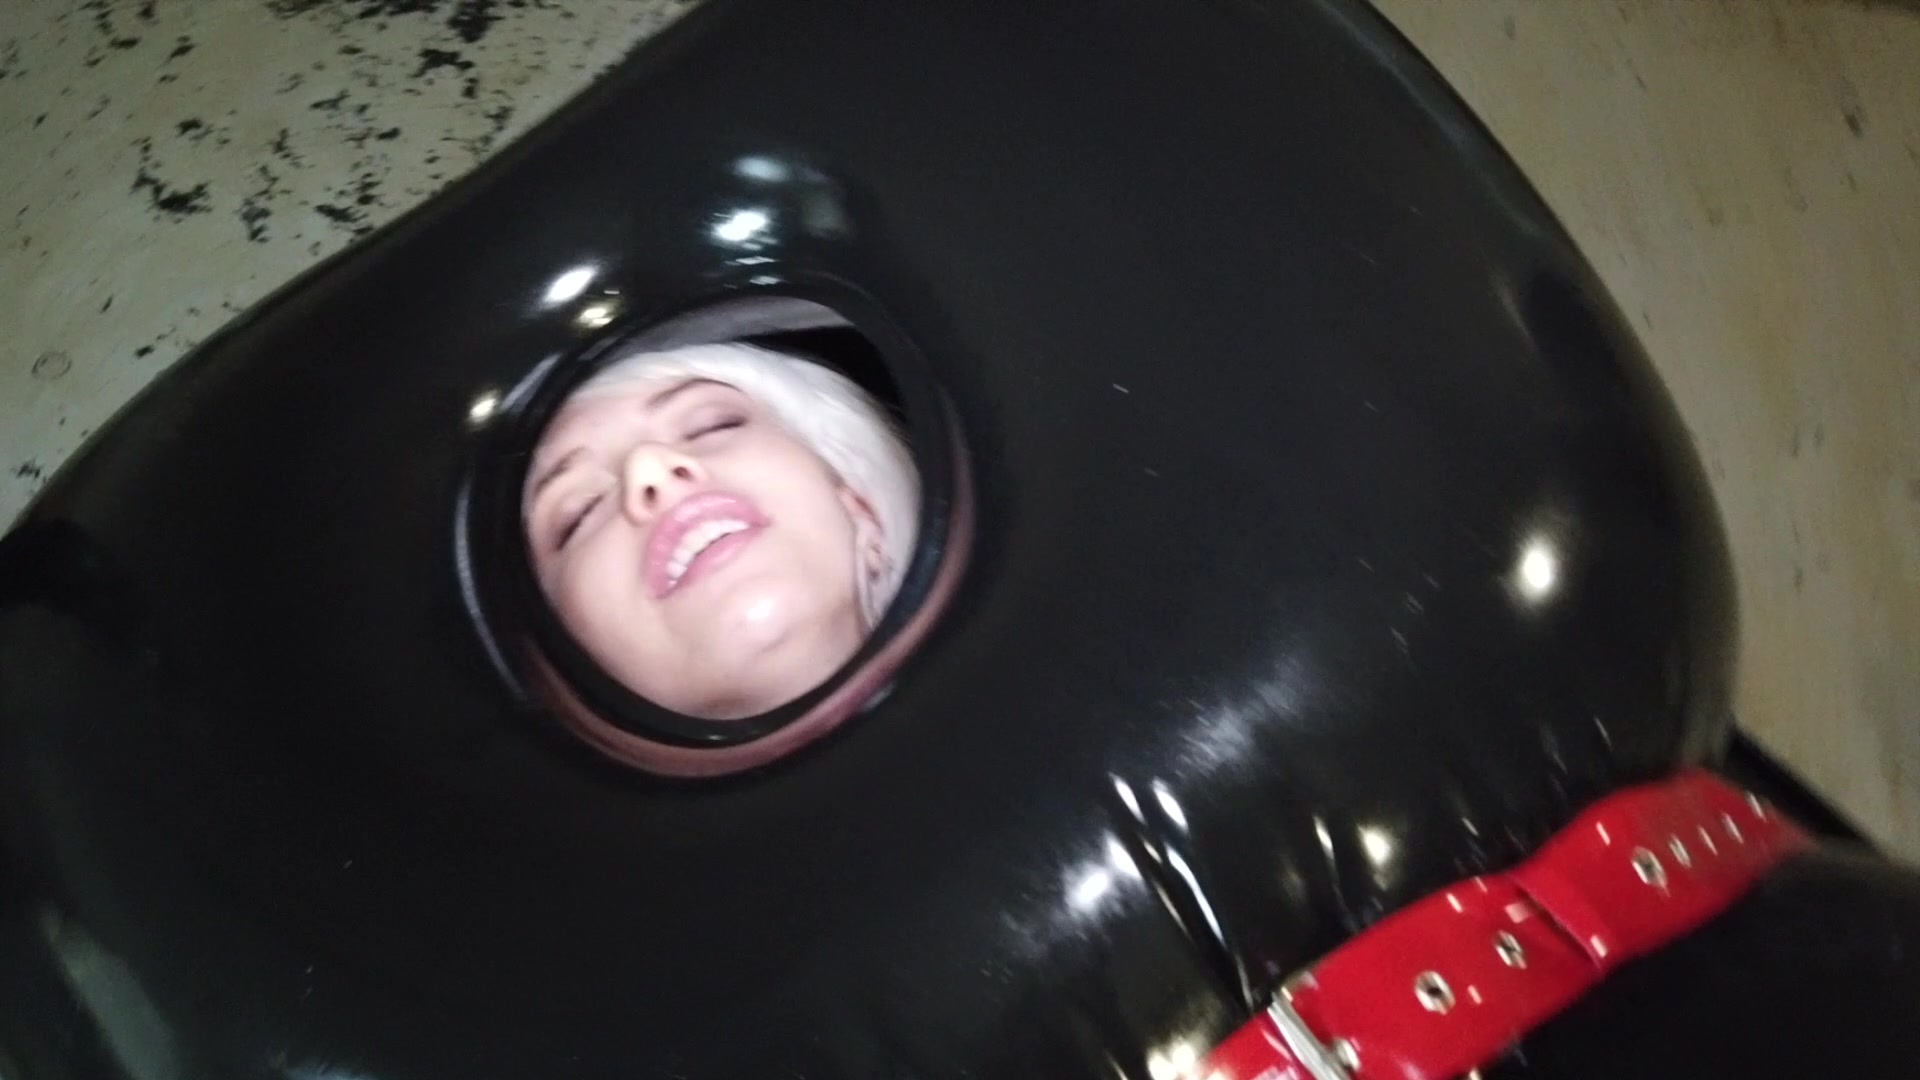 BoundHub - Inflatable Rubber Sleepsack